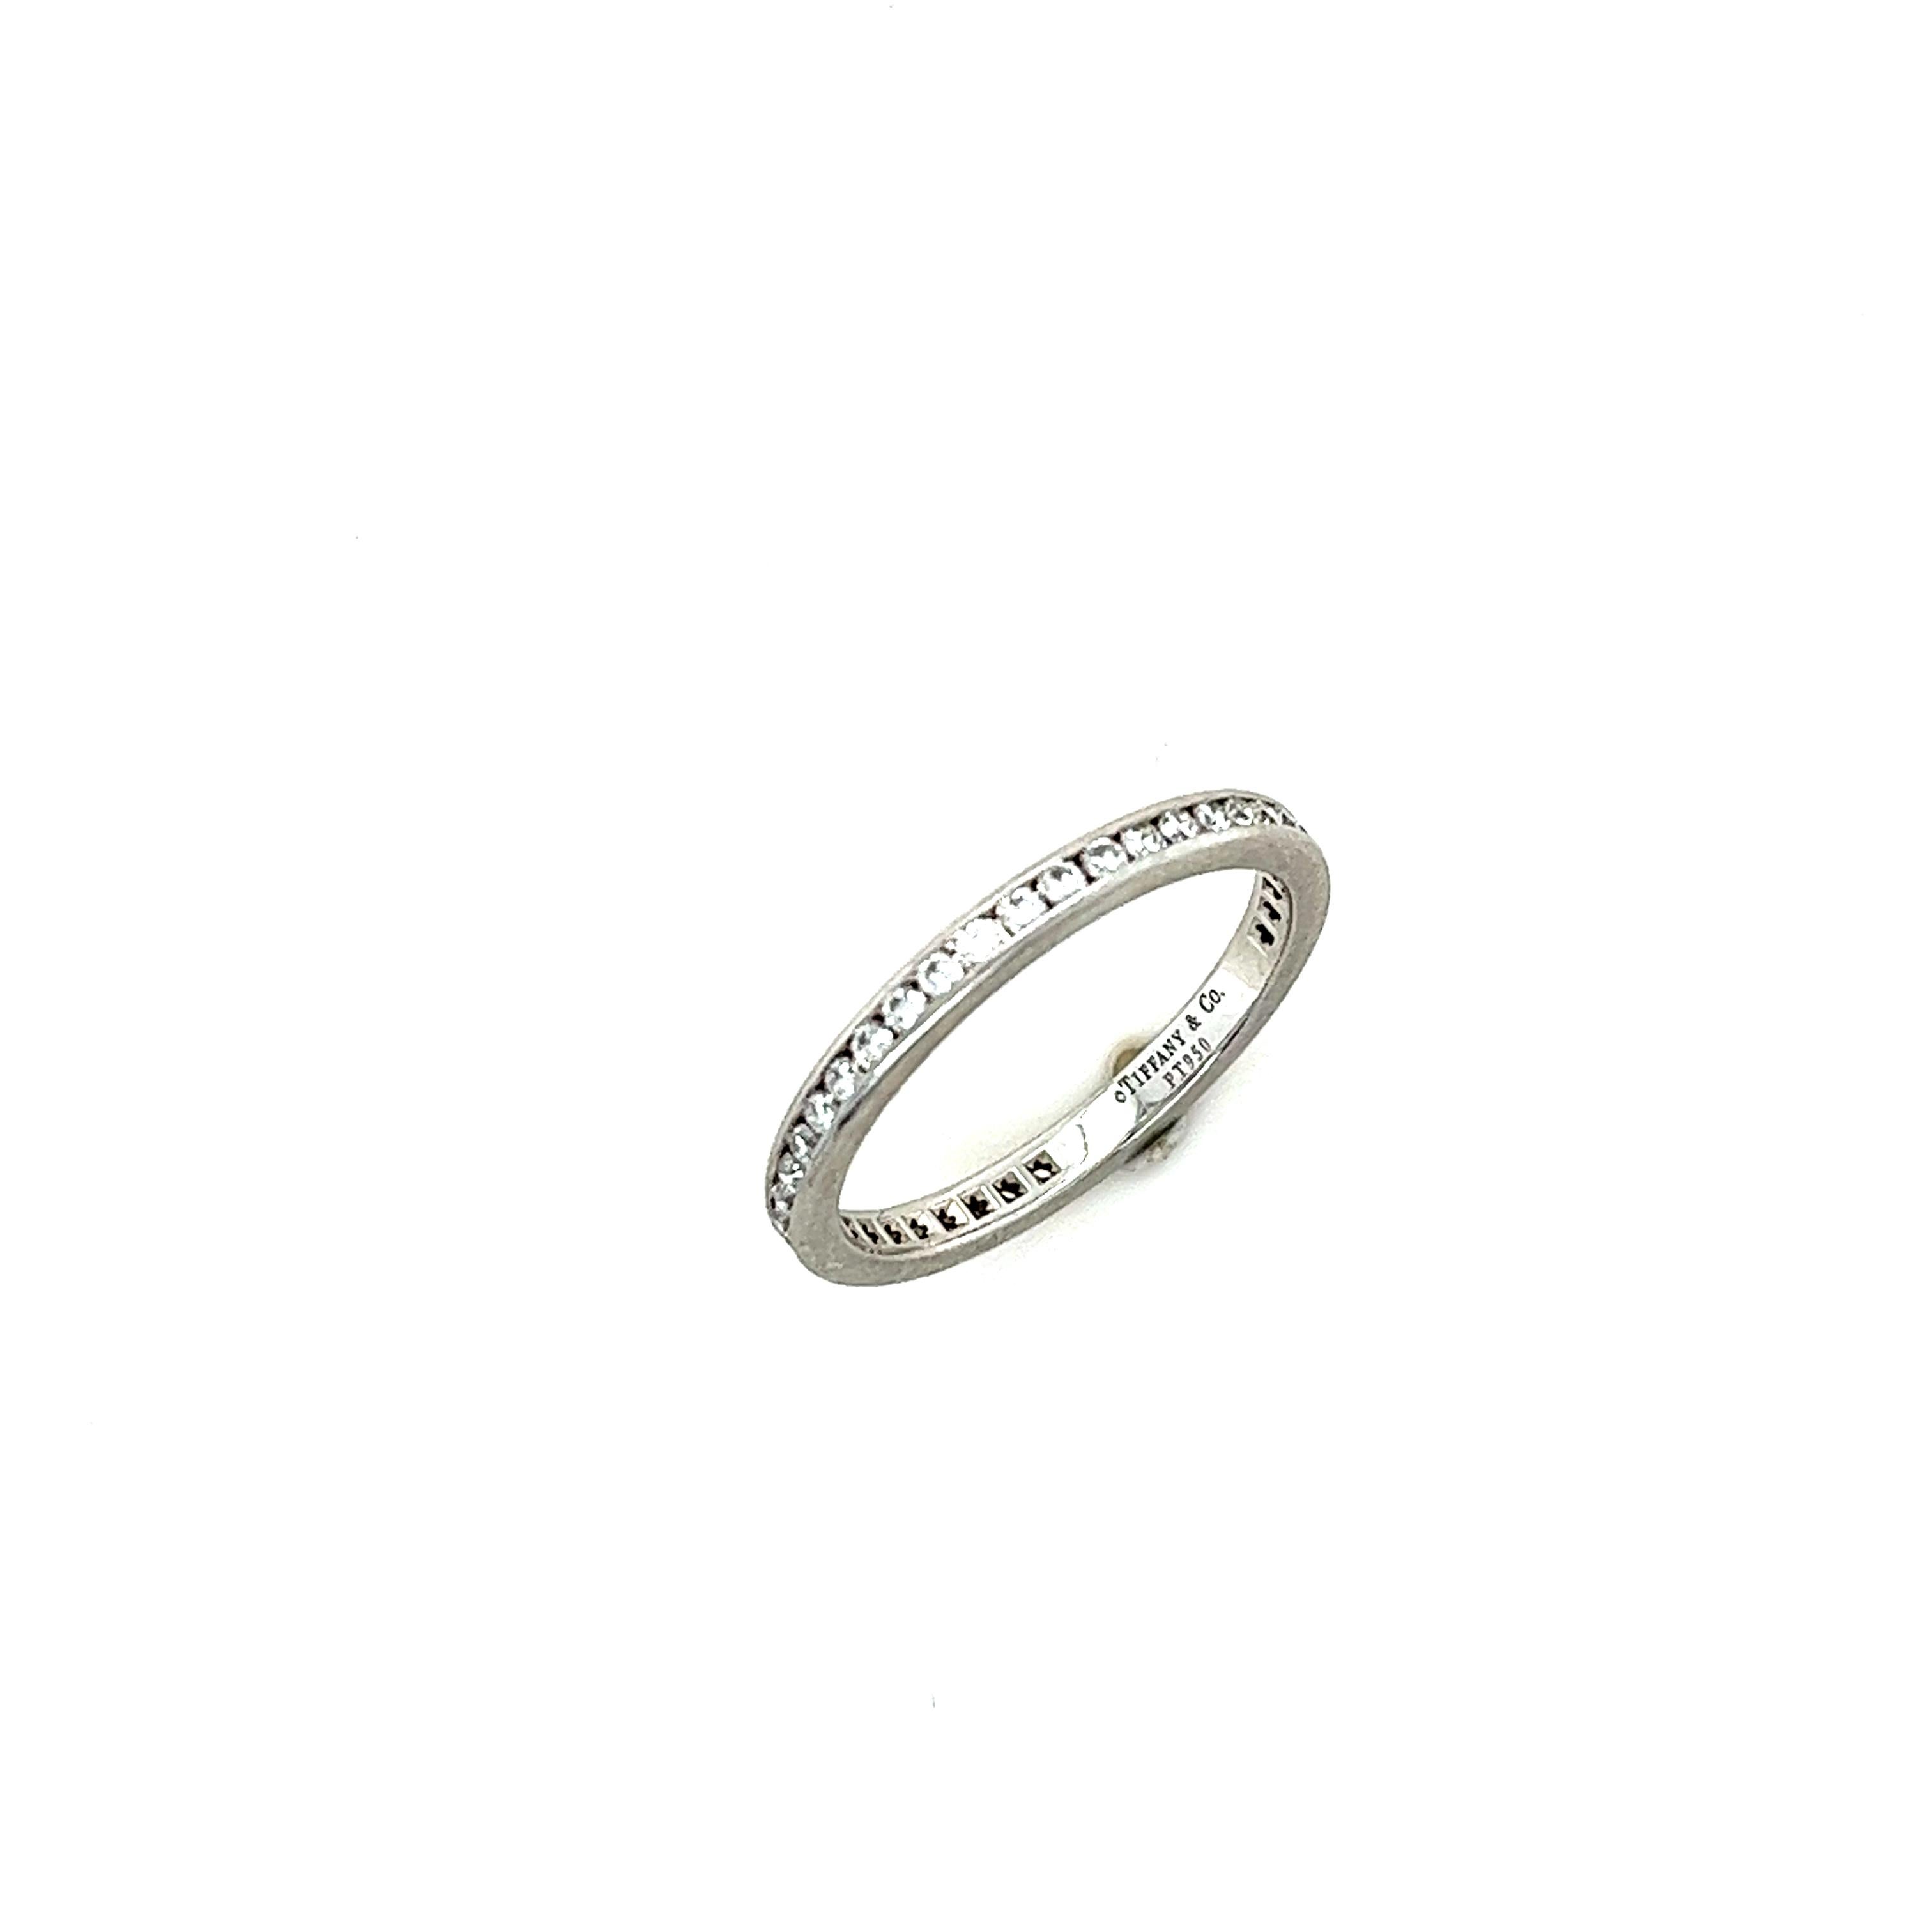 Ein Tiffany & Co Diamond Full Circle Wedding Ring, mit 42 runden Diamanten im Brillantschliff, gefasst in Platin auf einem 2,3 mm breiten Band.

Diamanten 42 = 0,55ct (geschätzt), F/VS
Metall: Platin PT950
Karat: 0,55ct
Farbe: F
Klarheit: